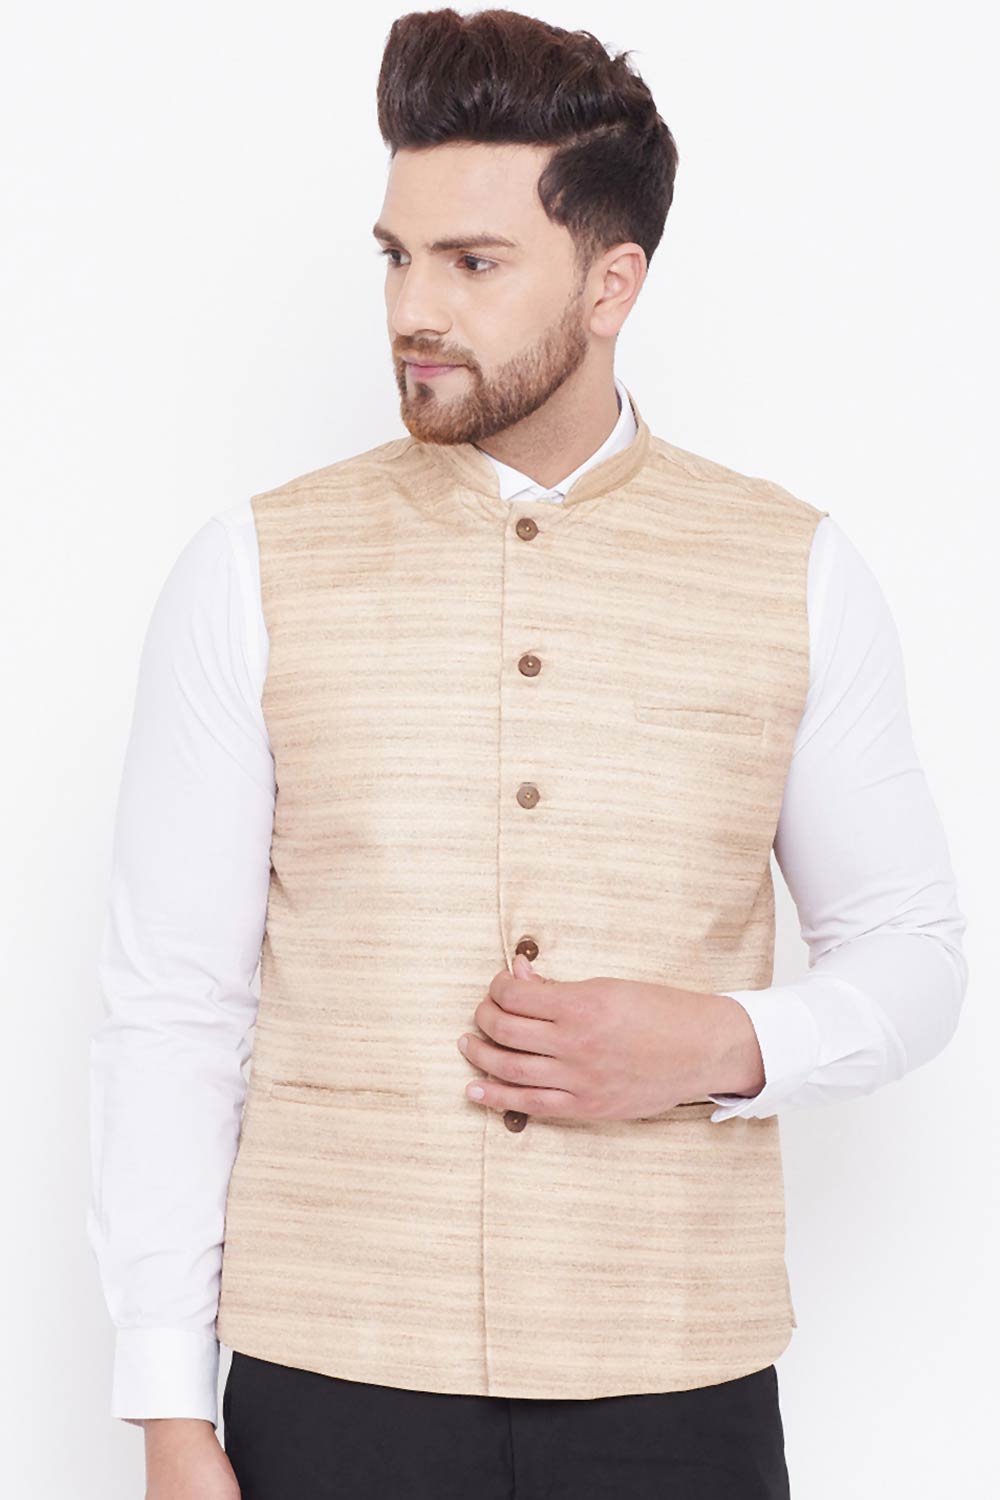 Beige Art Silk Nehru Jacket for Men's